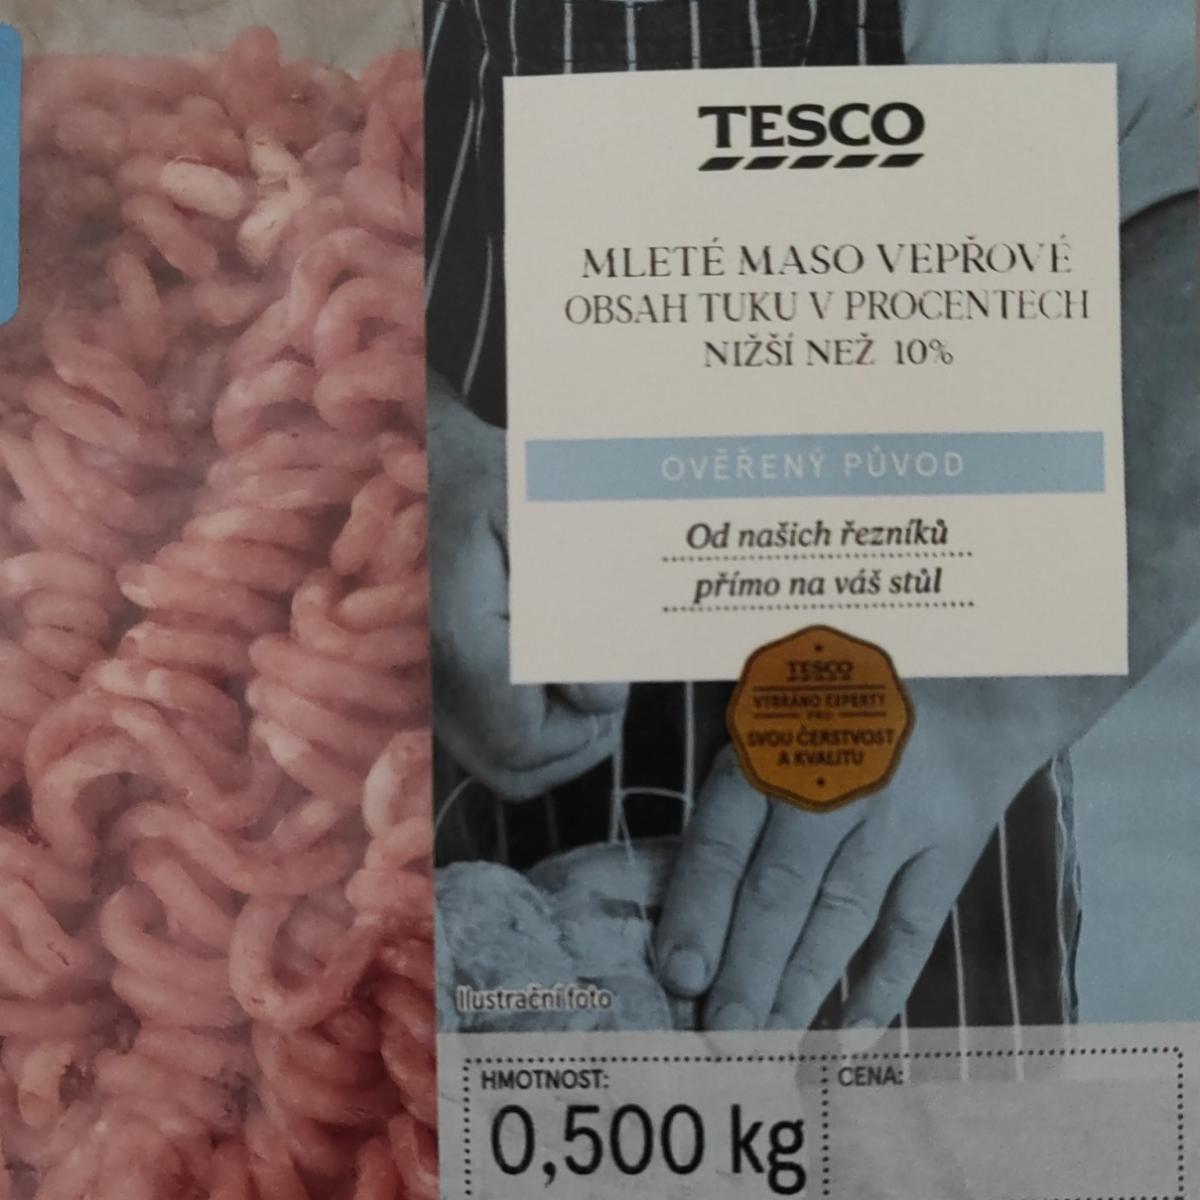 Fotografie - mleté maso vepřové obsah tuku nižší než 10% Tesco